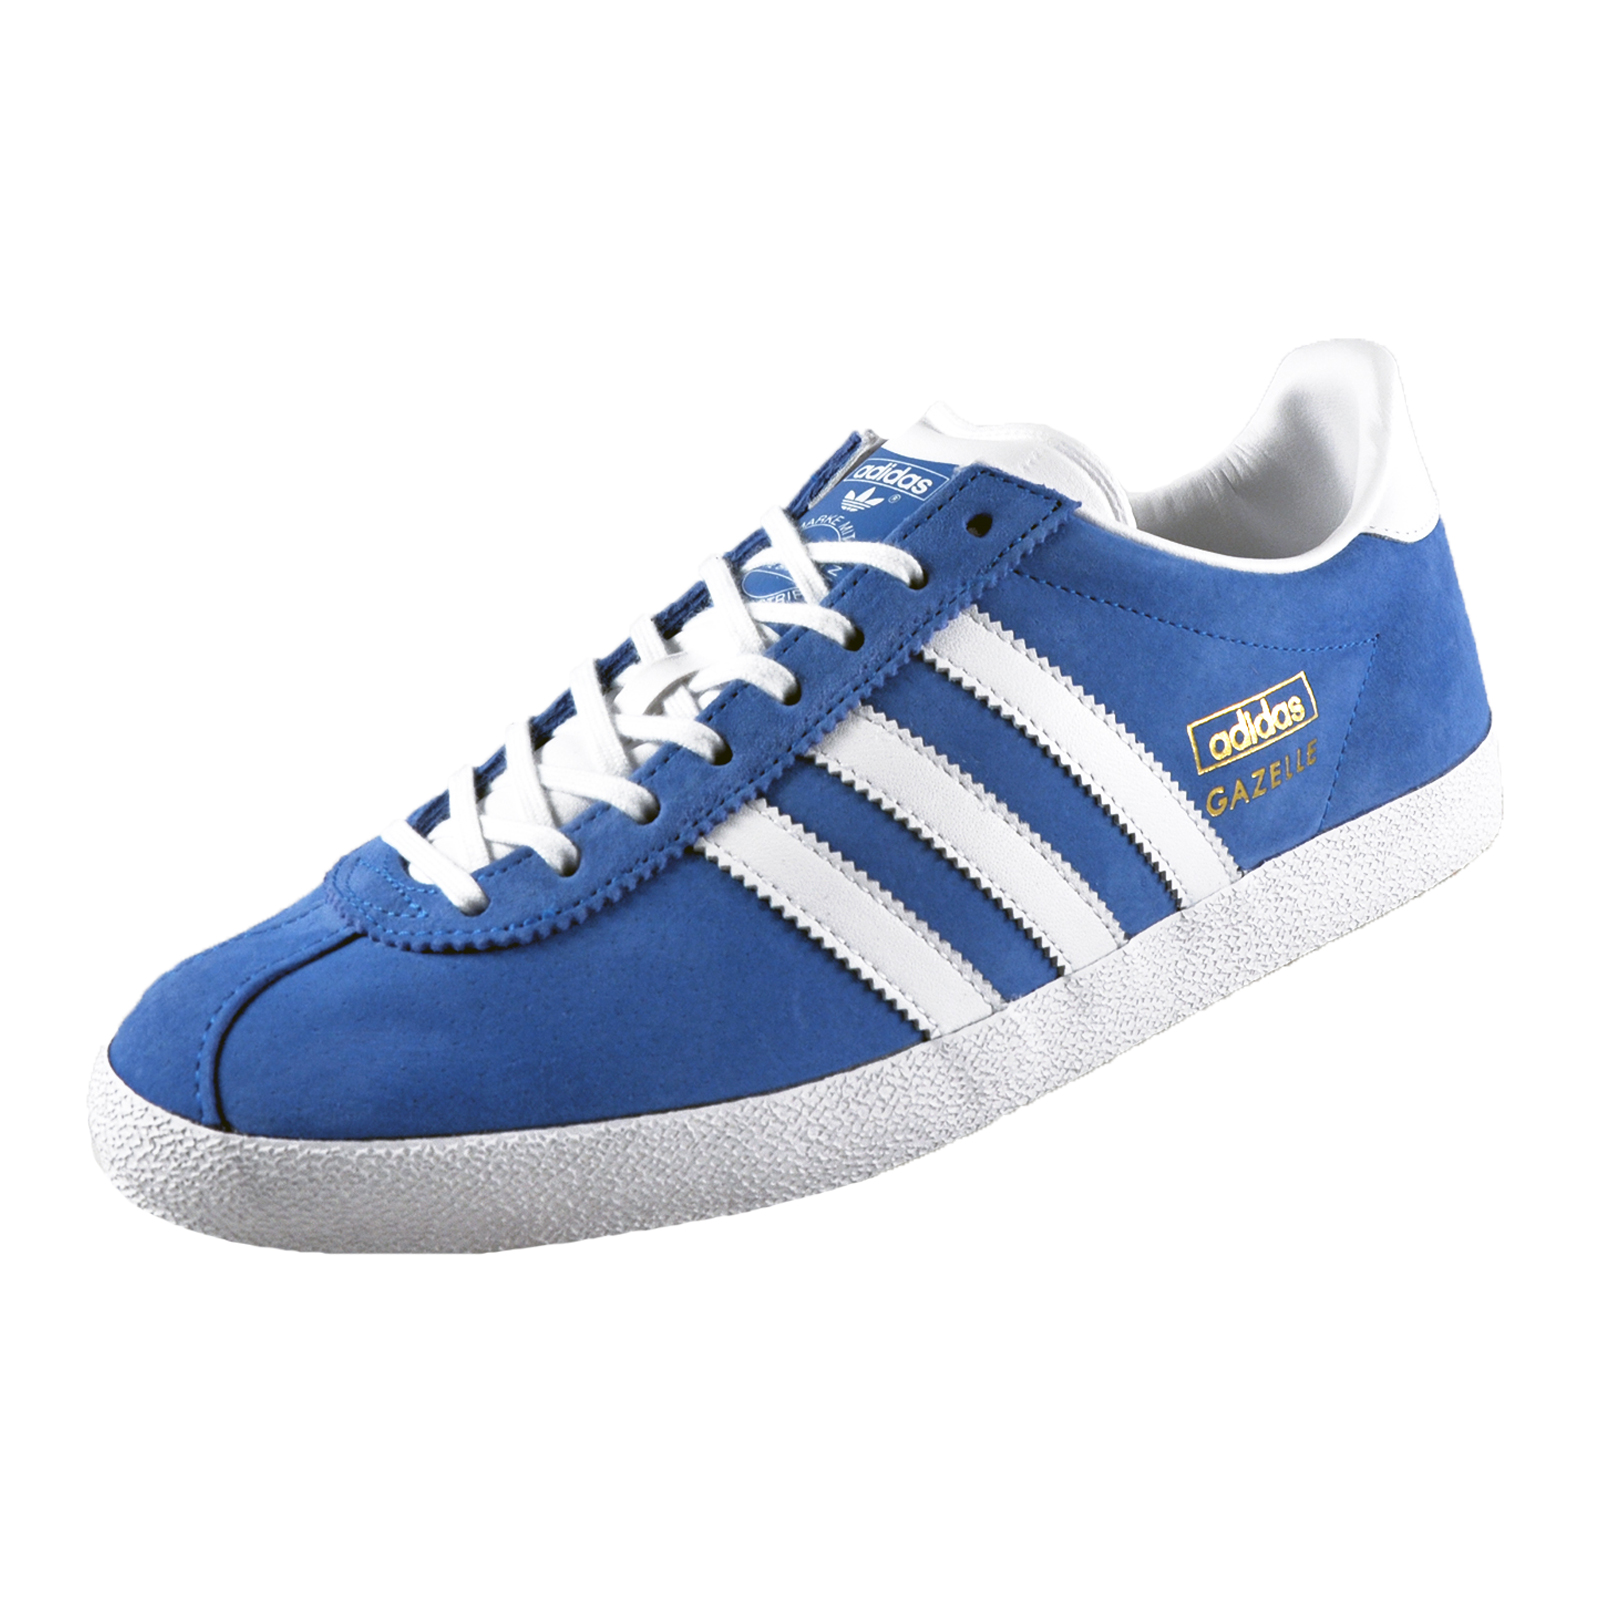 Adidas Originals Mens Gazelle OG Classic Retro Trainers Blue